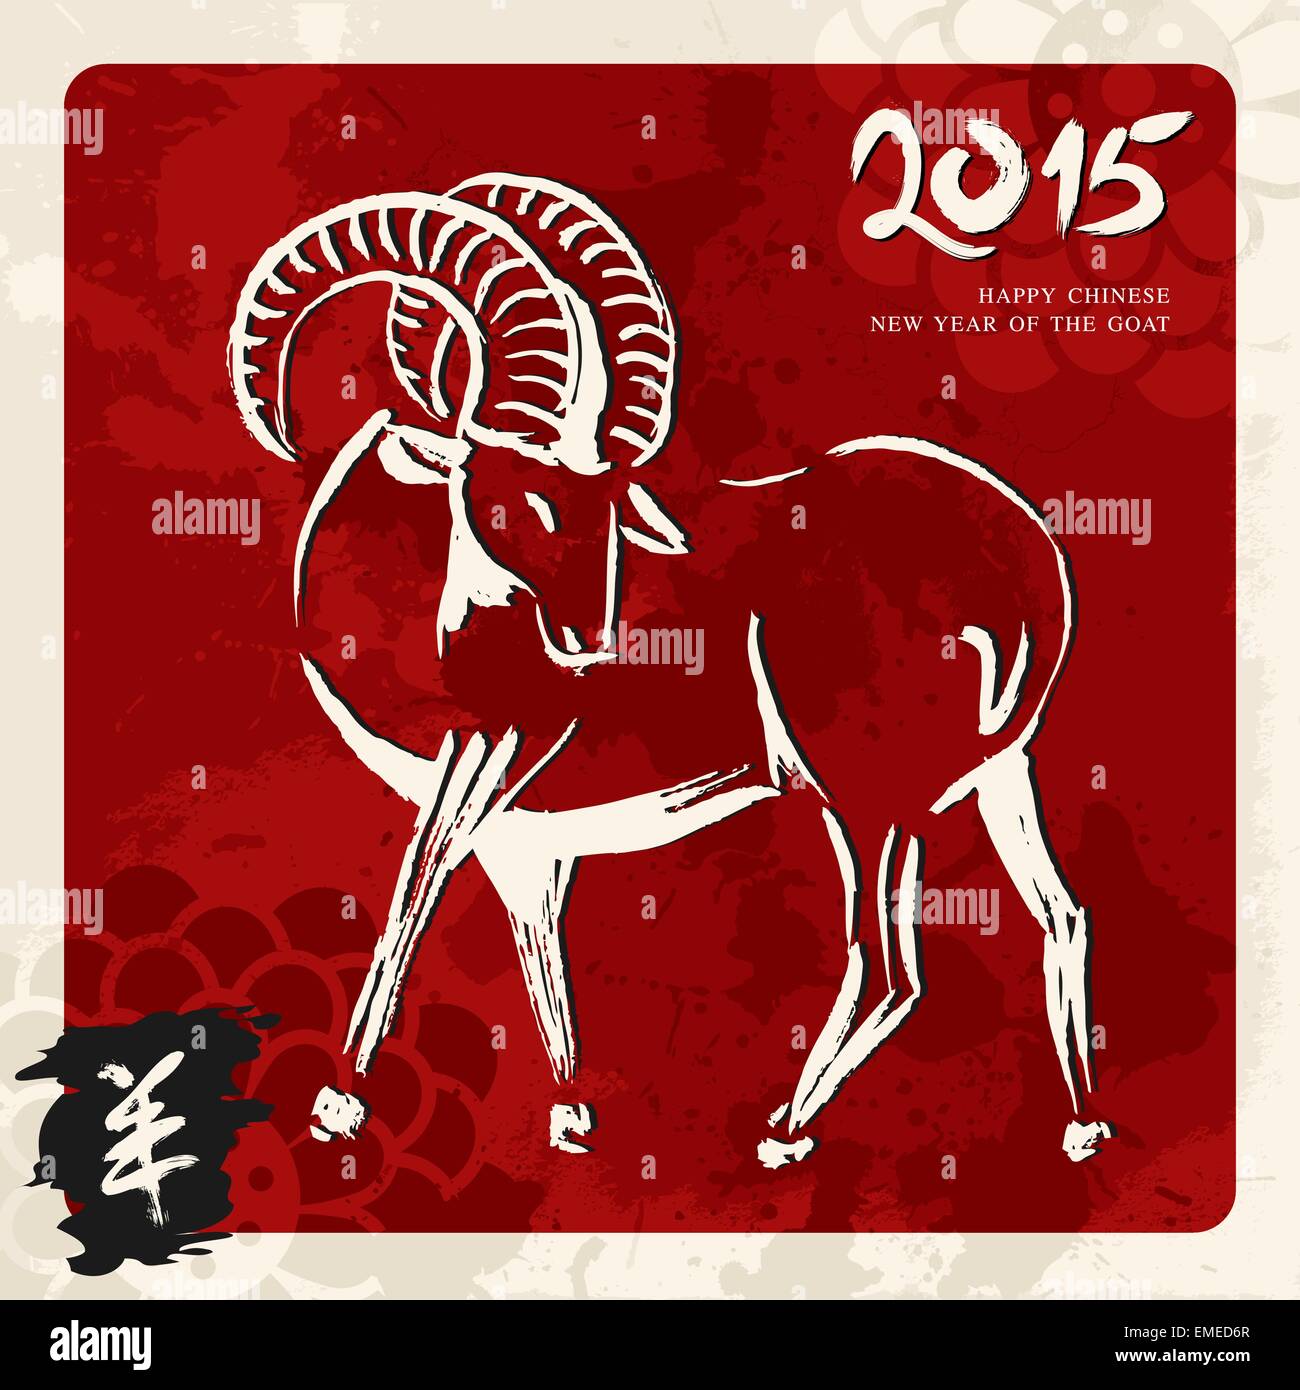 Neues Jahr der Ziege 2015 Grußkarte Stock Vektor